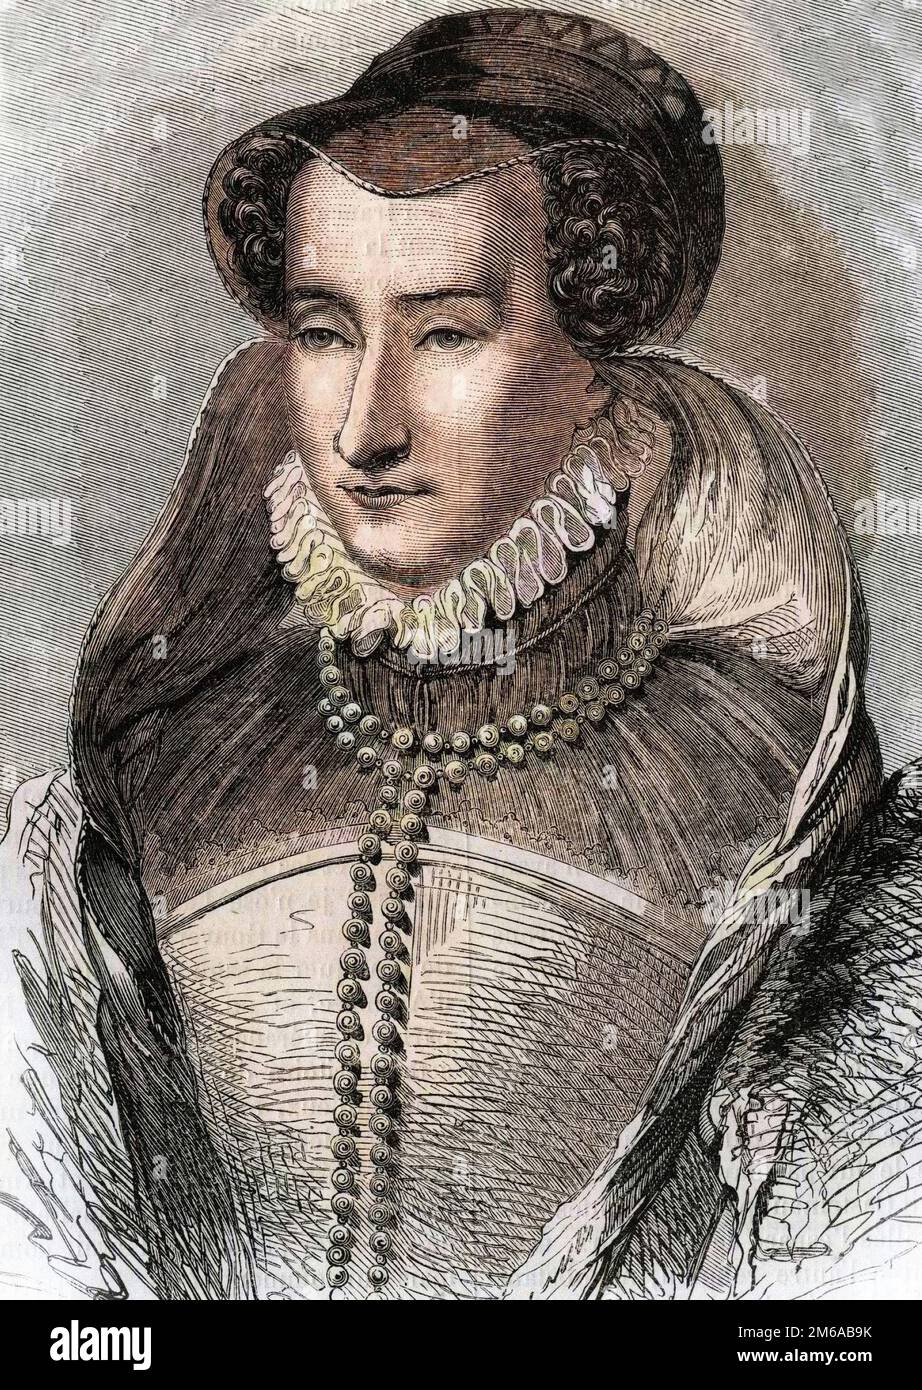 Portrait de Jeanne III d'Albret (1528 1572), Mere du roi Henri IV et epouse d'Antoine de Bourbon (1528-1572). In "Histoire Populaire de la France", vers 1885. Gravure. Foto Stock